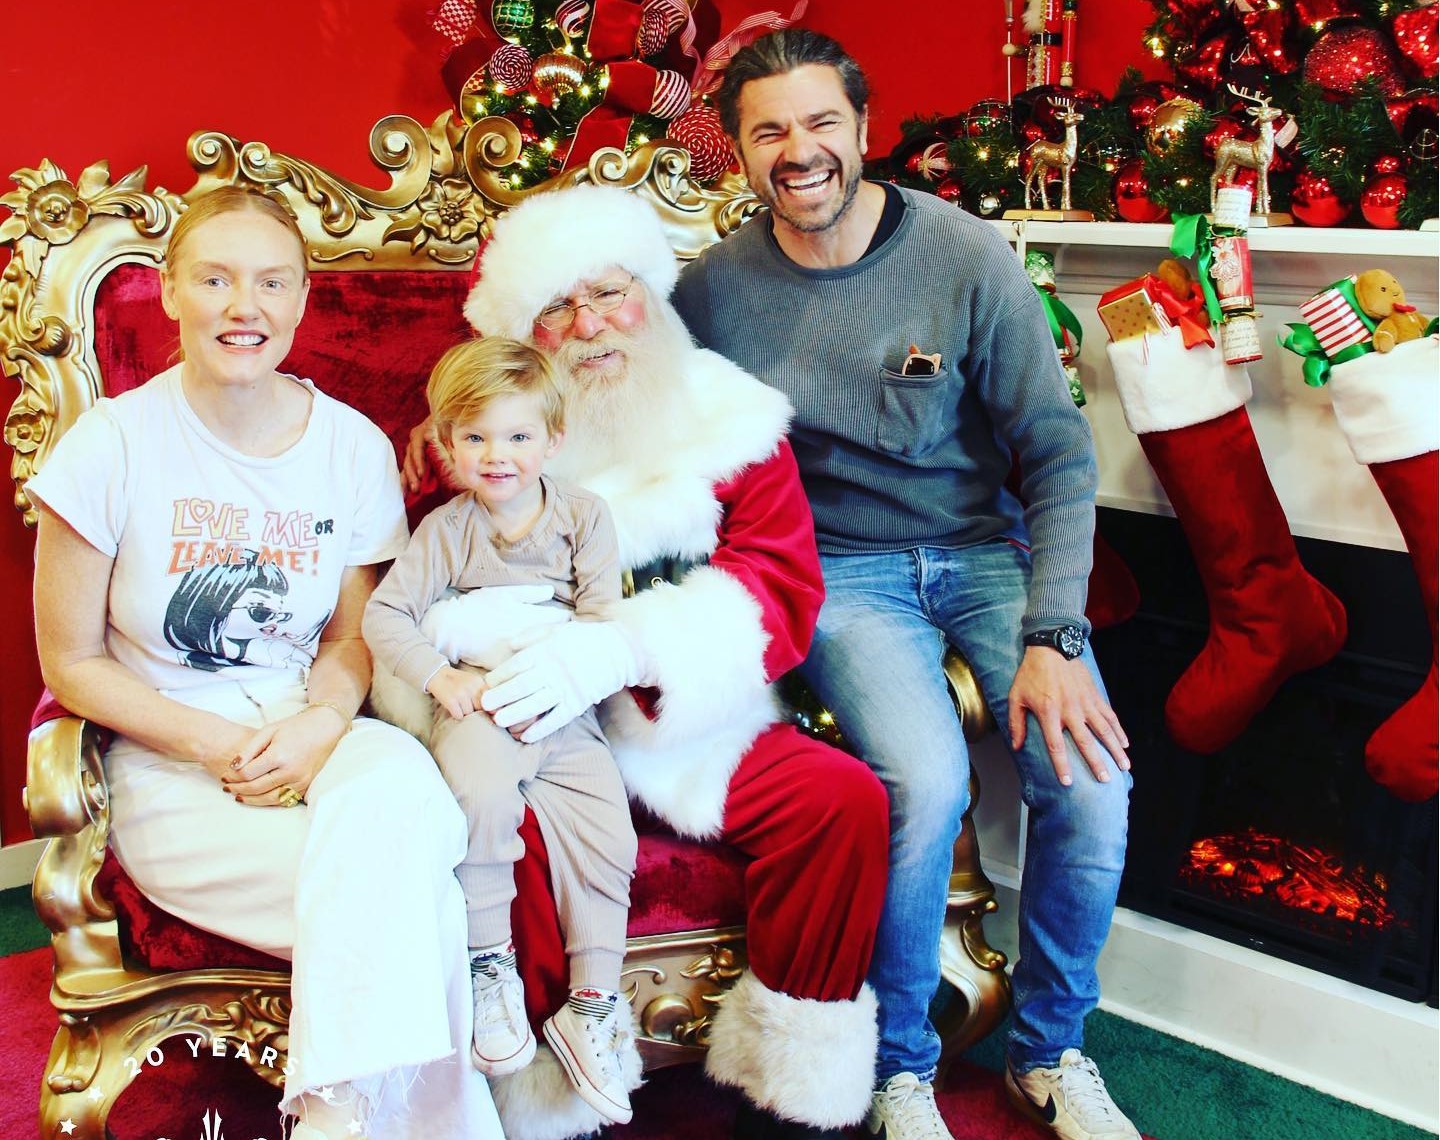 Χρήστος Βασιλόπουλος: Η χριστουγεννιάτικη φωτογραφία μαζί με τη Σάρα Κόνερ και τον γιο τους!